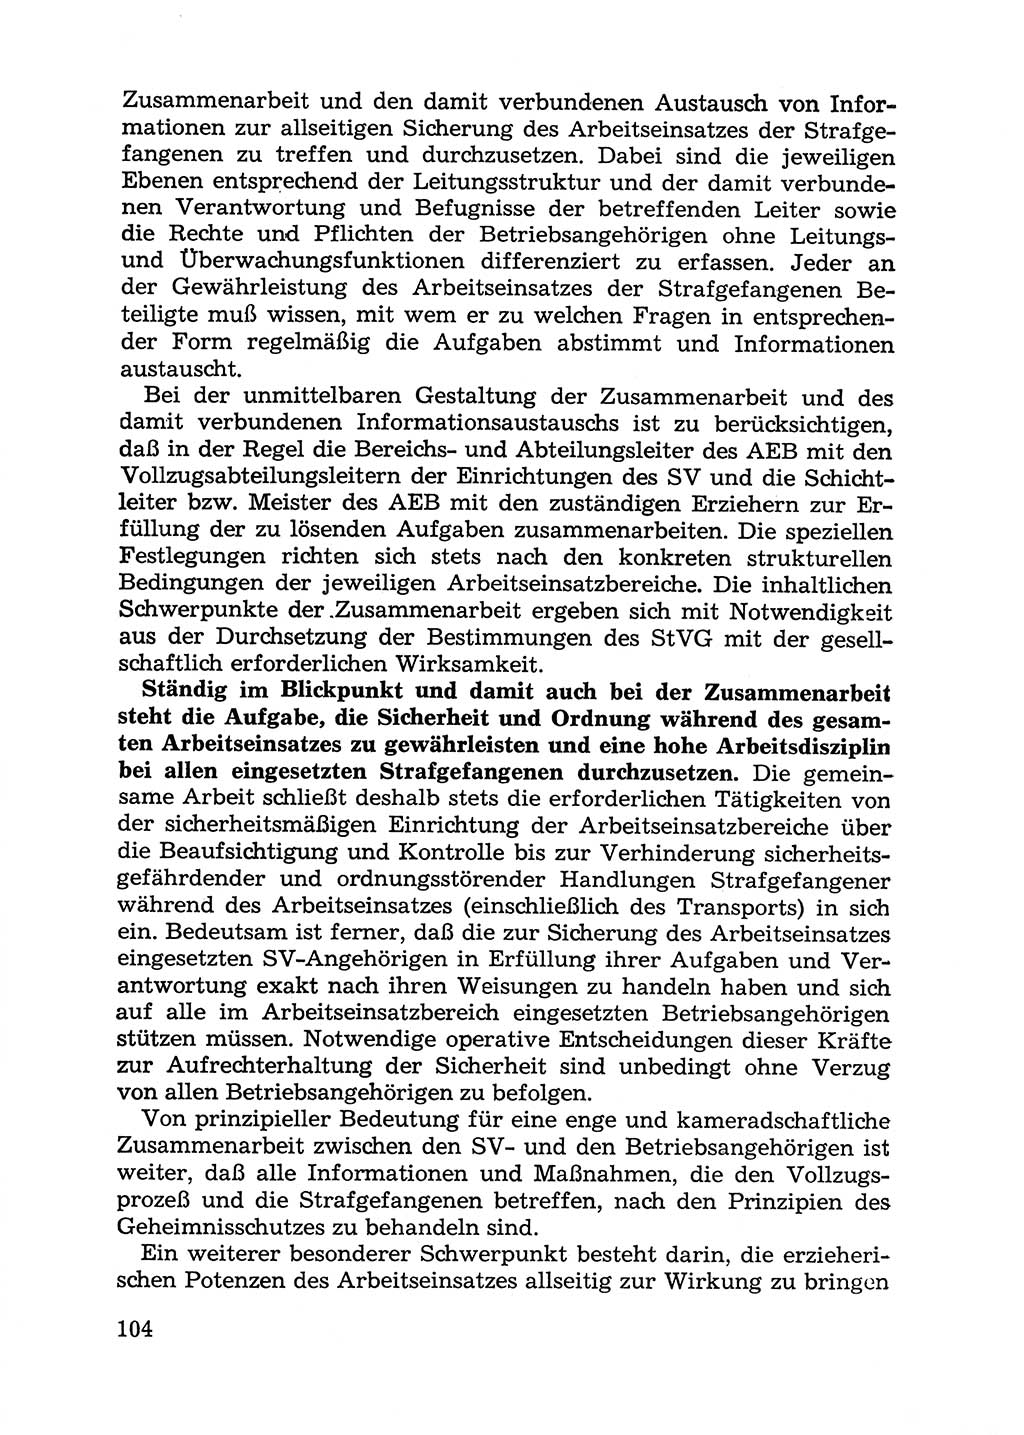 Handbuch für Betriebsangehörige, Abteilung Strafvollzug (SV) [Ministerium des Innern (MdI) Deutsche Demokratische Republik (DDR)] 1981, Seite 104 (Hb. BA Abt. SV MdI DDR 1981, S. 104)